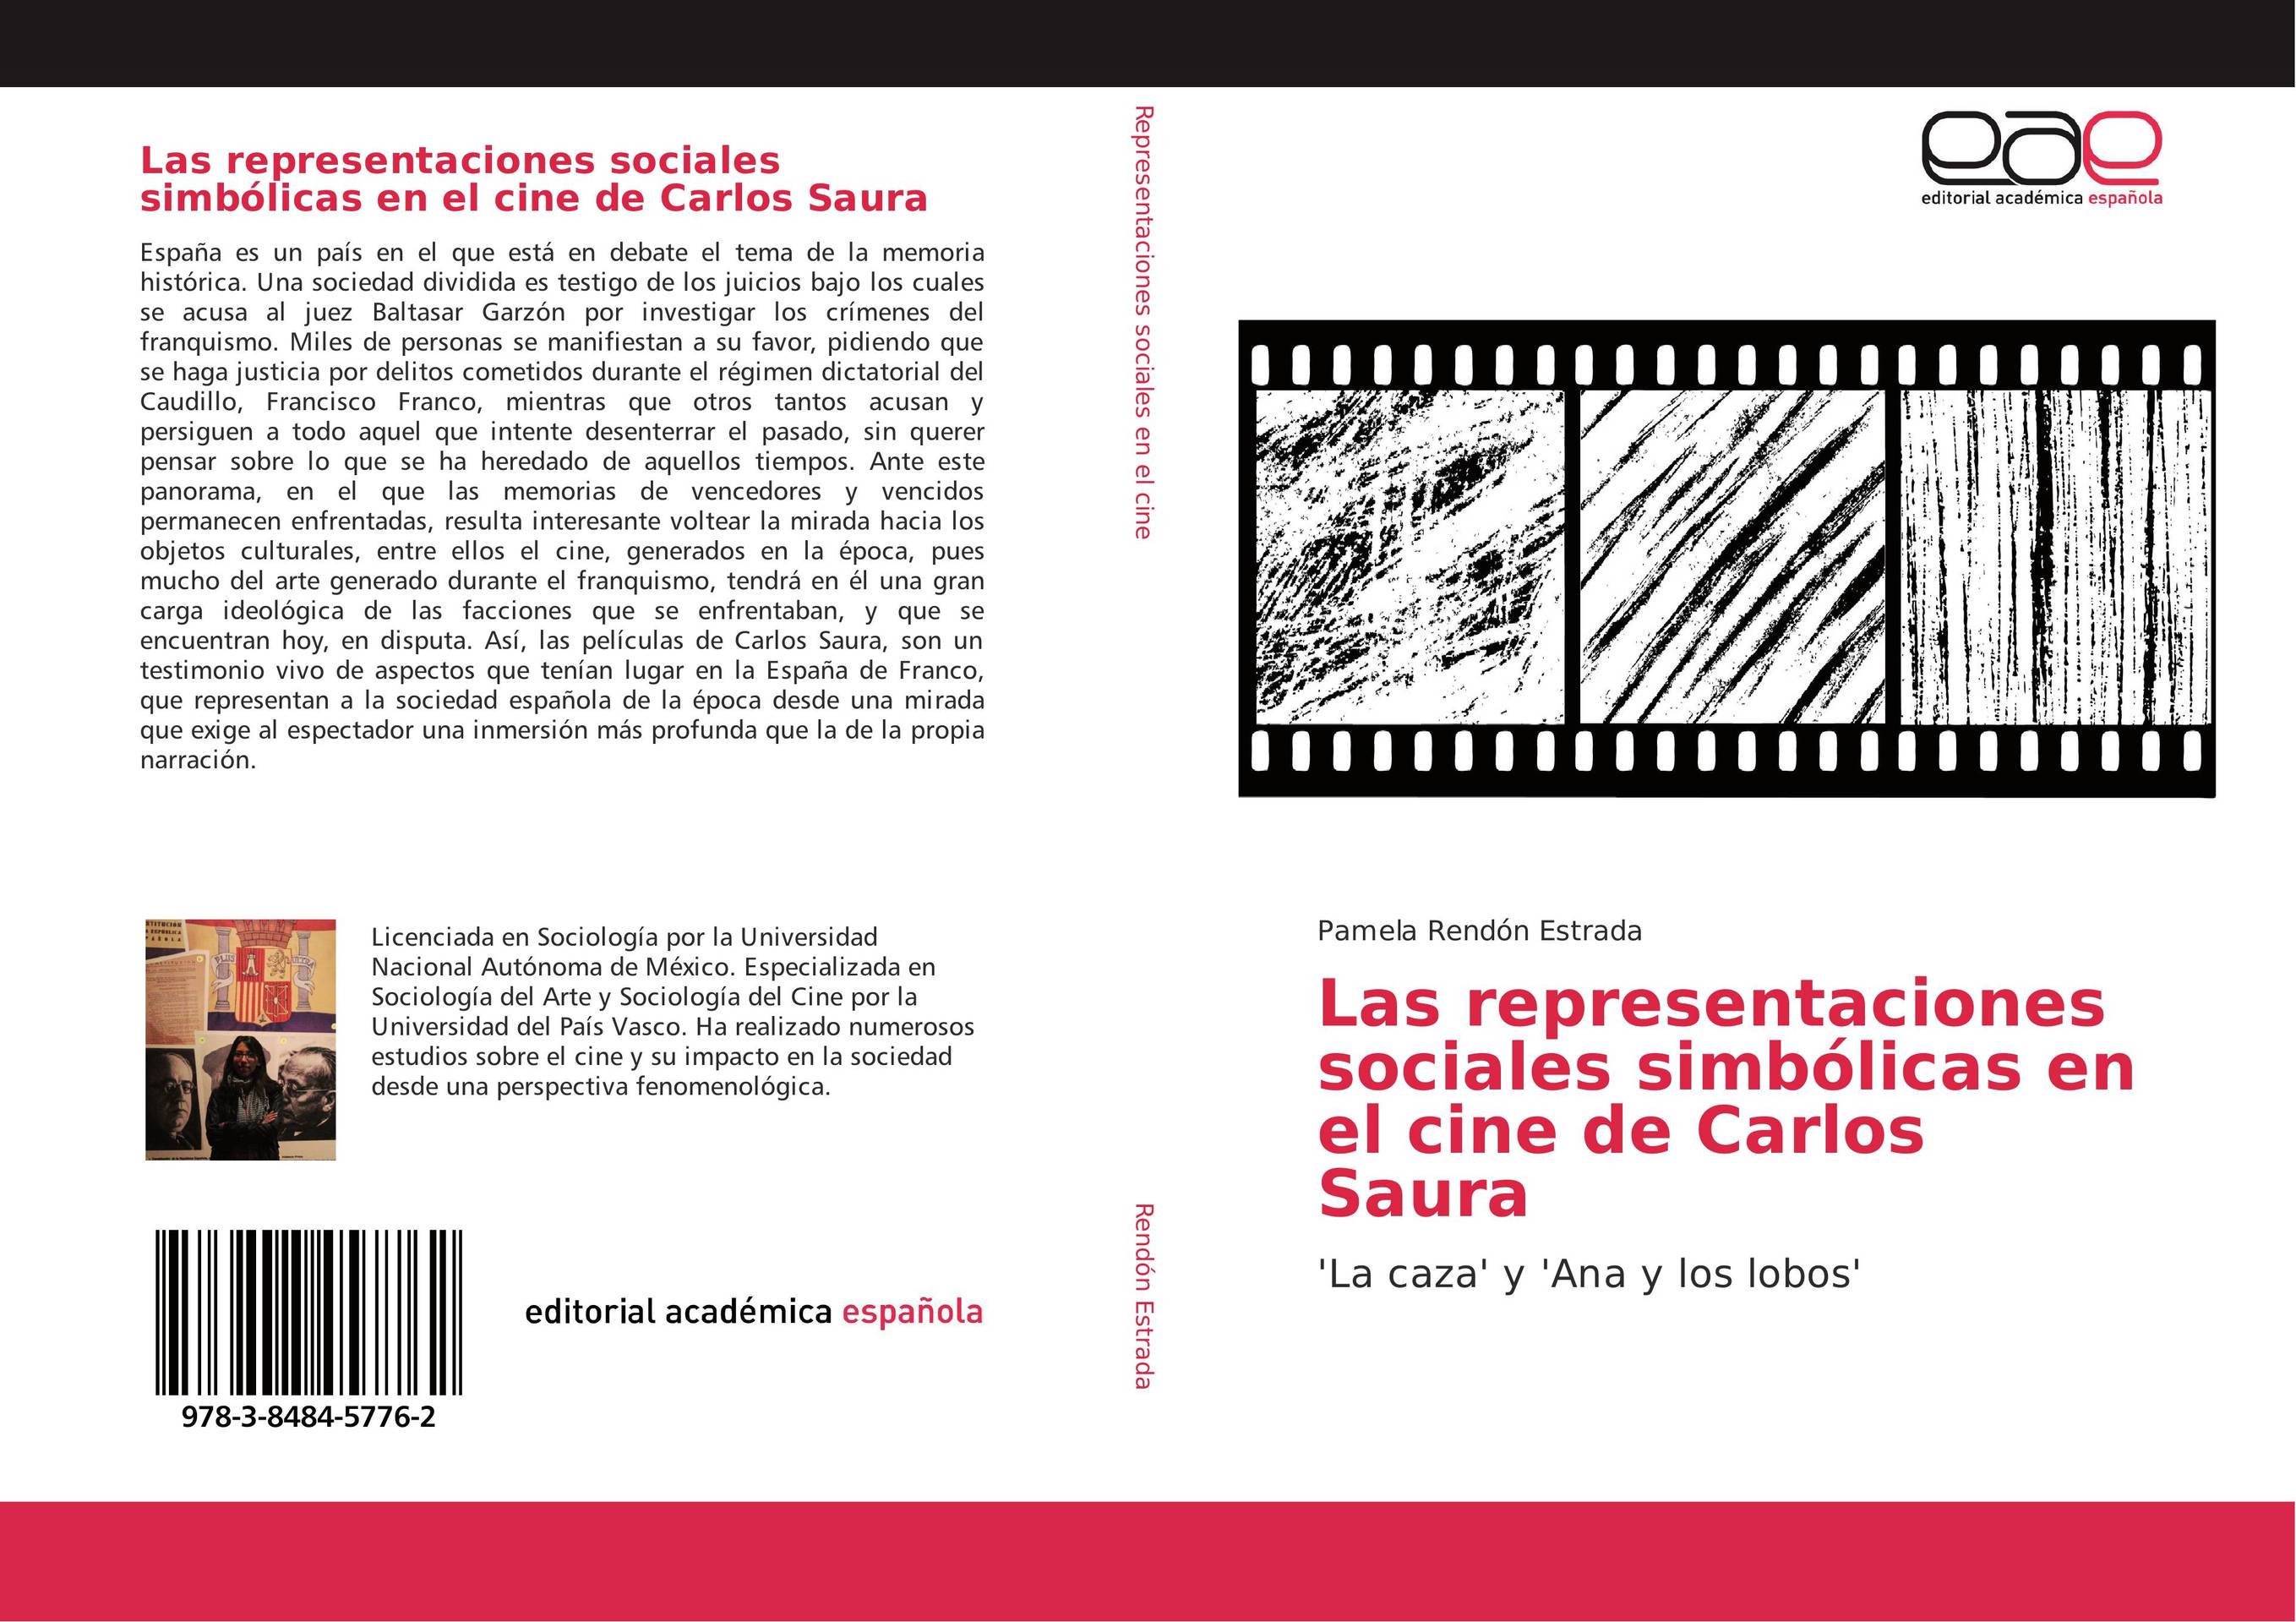 Las representaciones sociales simbólicas en el cine de Carlos Saura